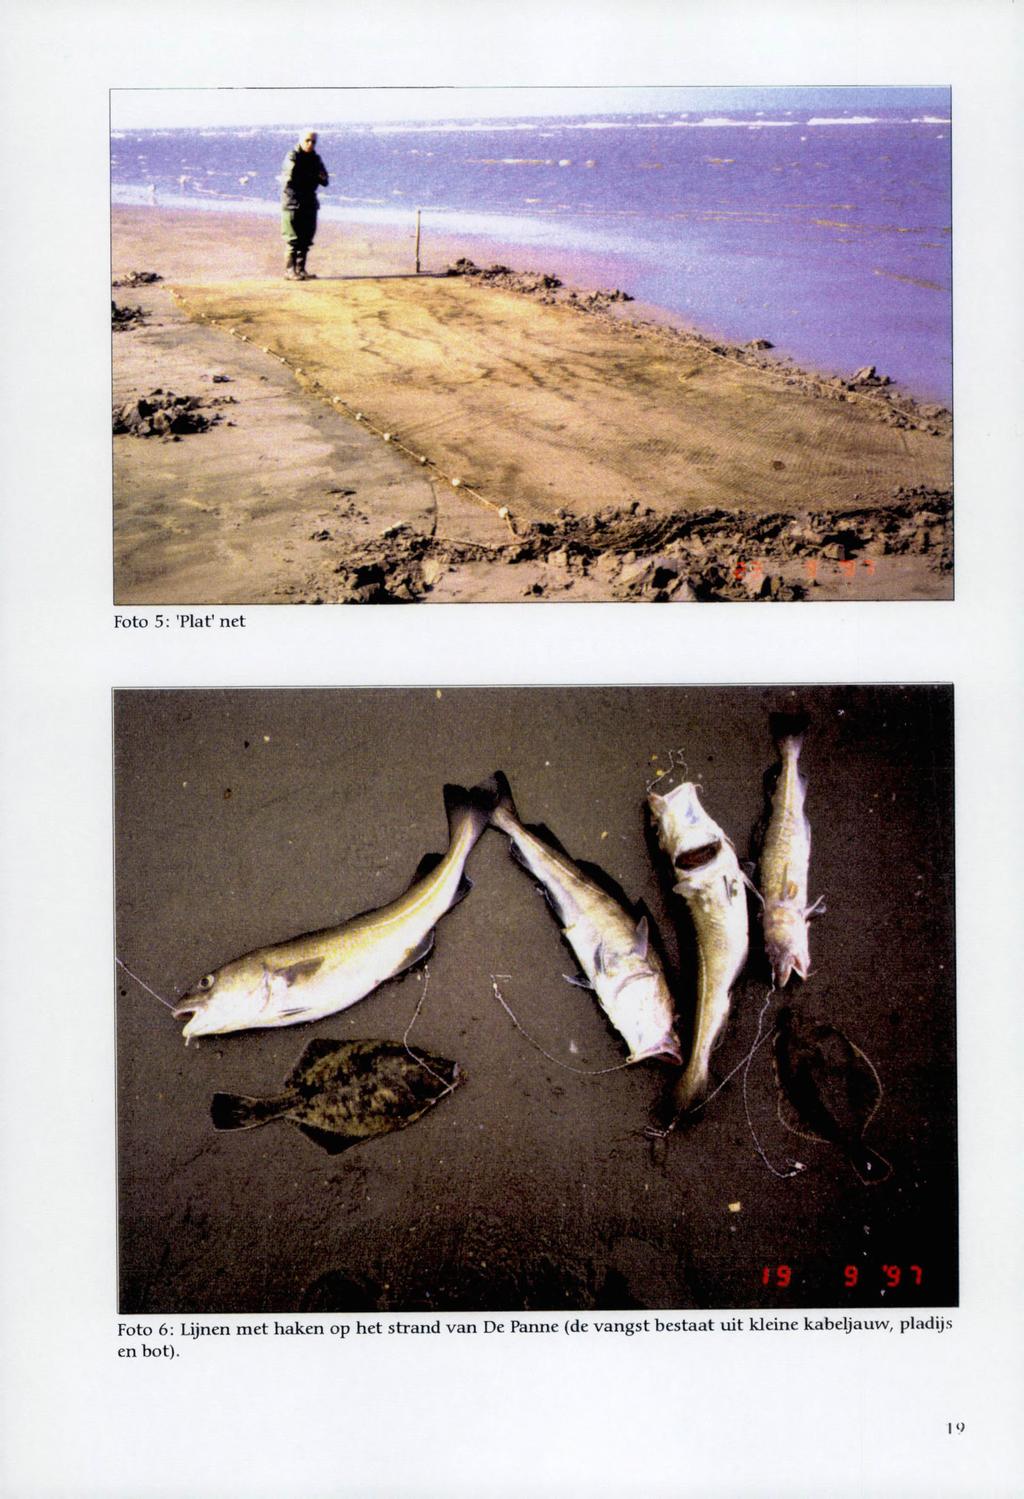 Foto 5 : 'Plat' net Foto 6: Lijnen met haken op het strand van De